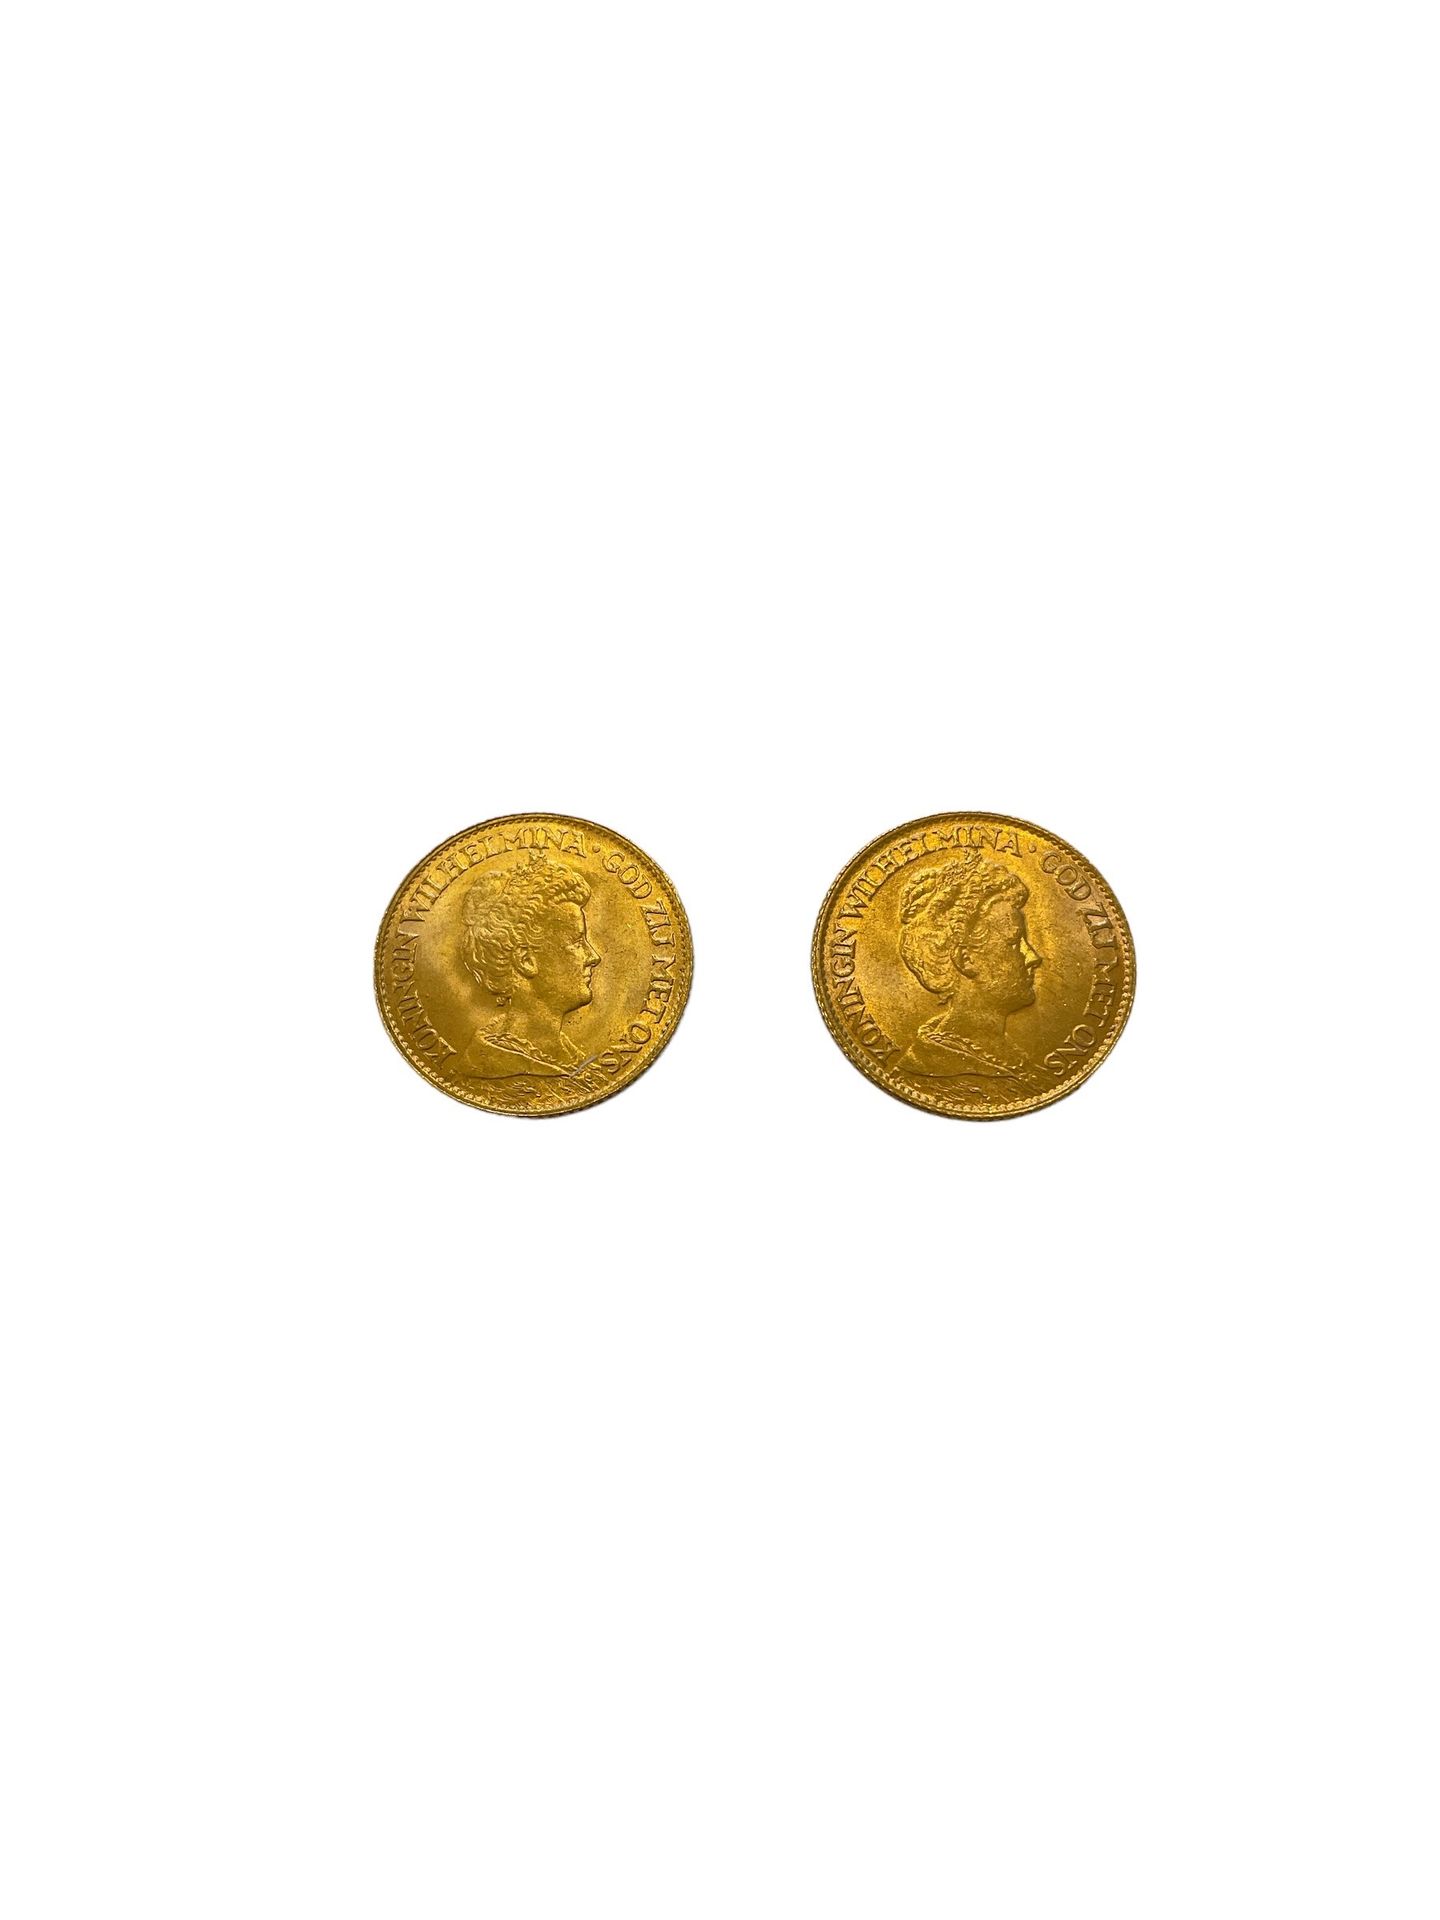 Null PAÍSES BAJOS
2 piezas 10 Gulden de oro
Peso : 13,4 g